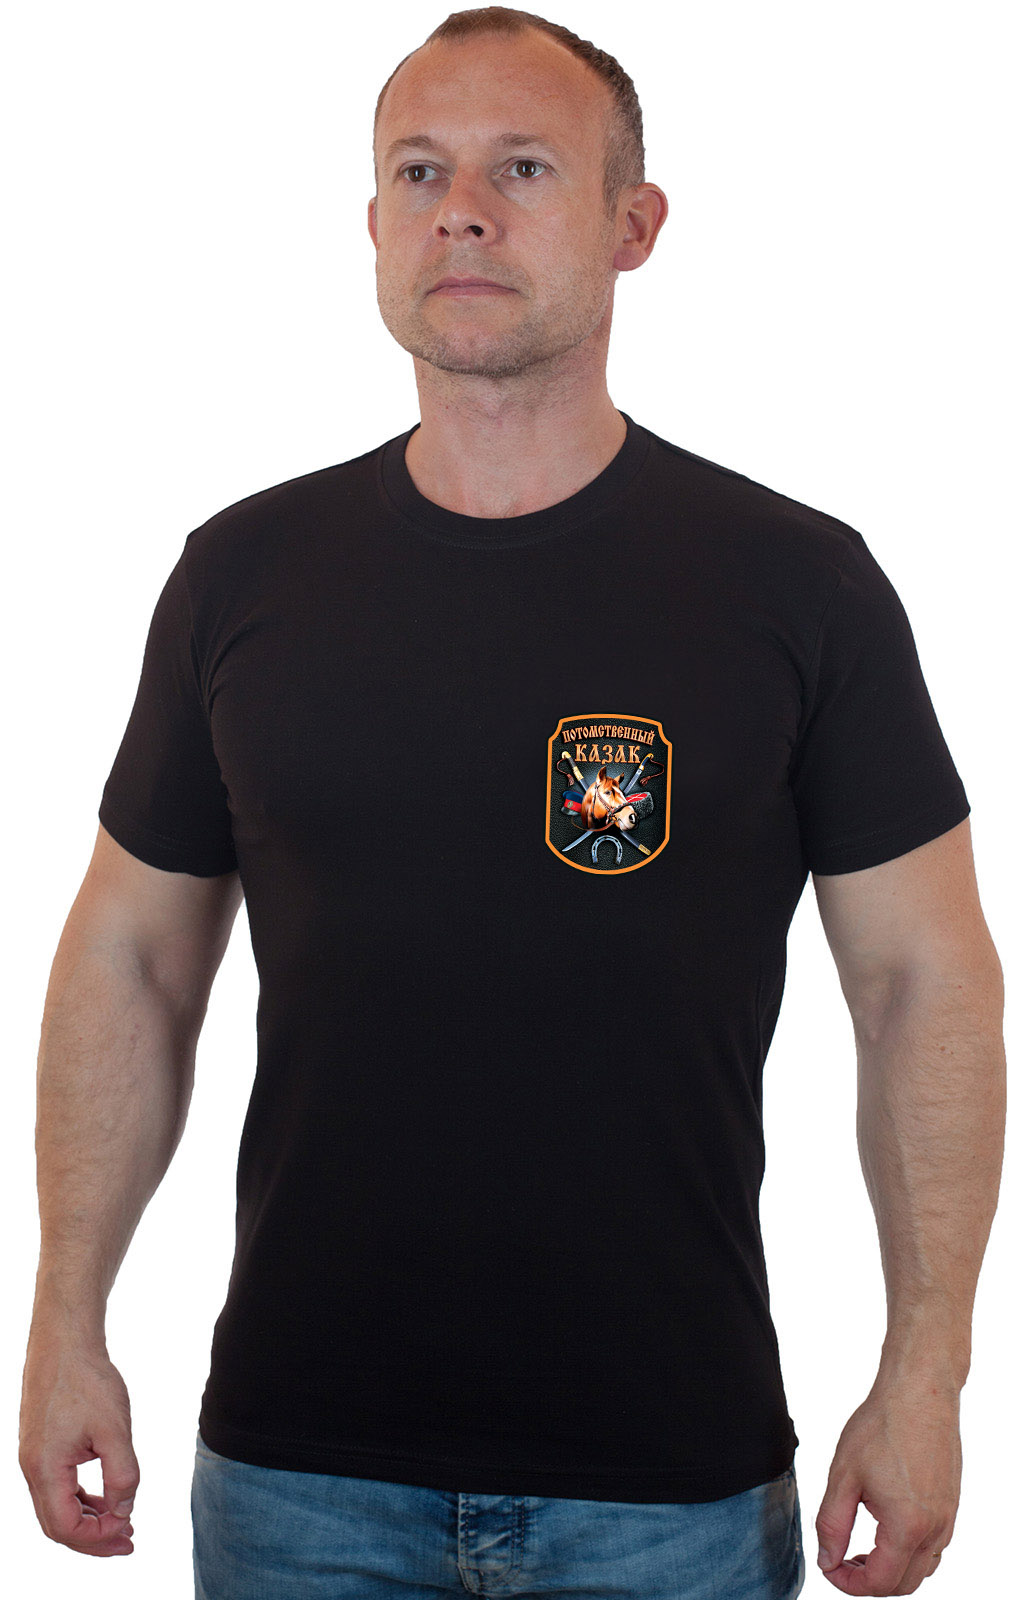 Патриотичная футболка с трансфером "Потомственный казак" 